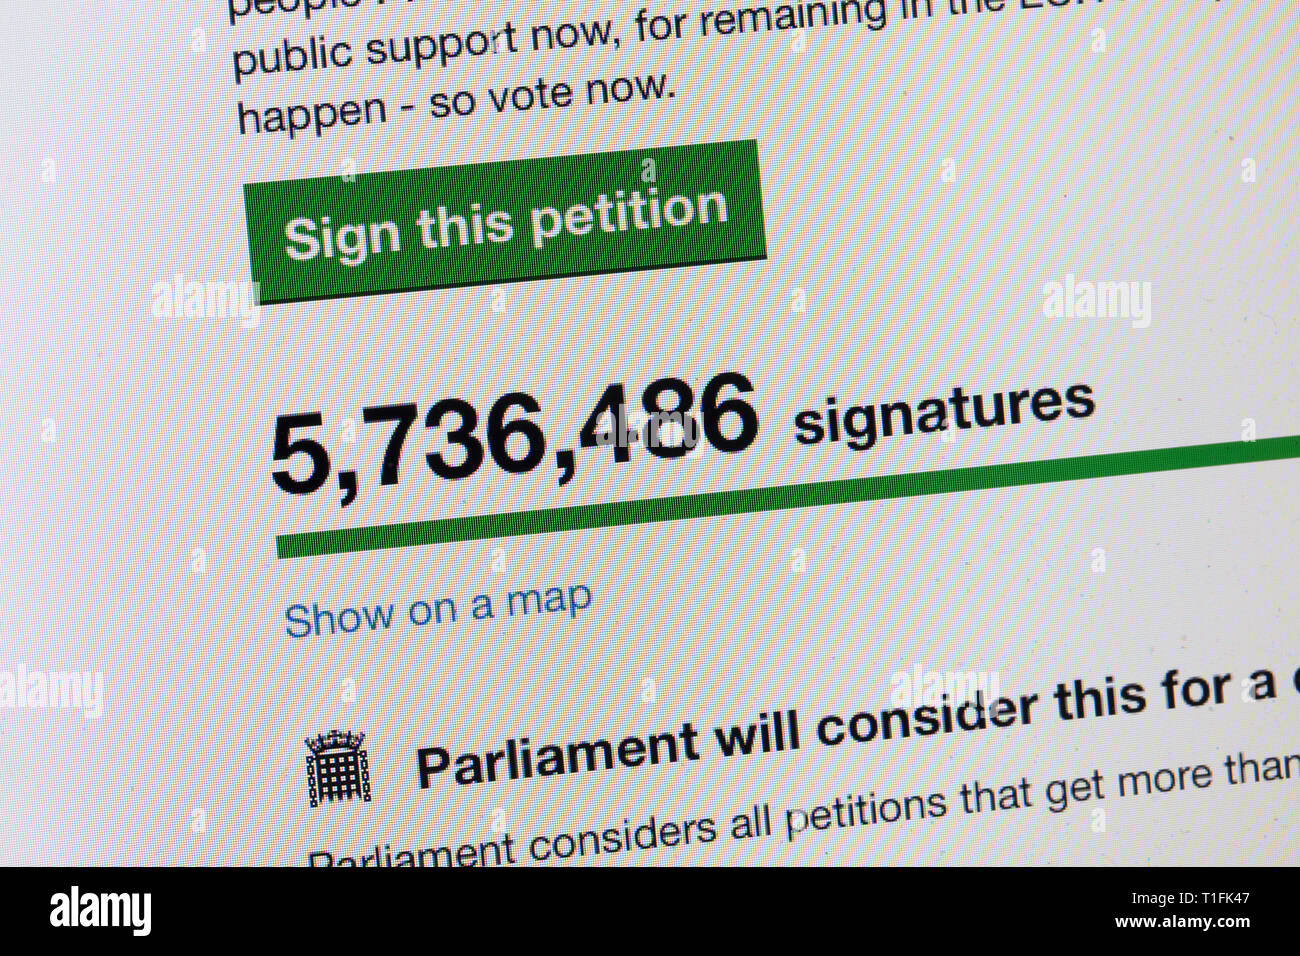 LONDON, Regno Unito - 26 Marzo 2019: petizione online per revocare l'articolo 50 e riconsiderare brexit ha oltre 5 milioni di firme Foto Stock